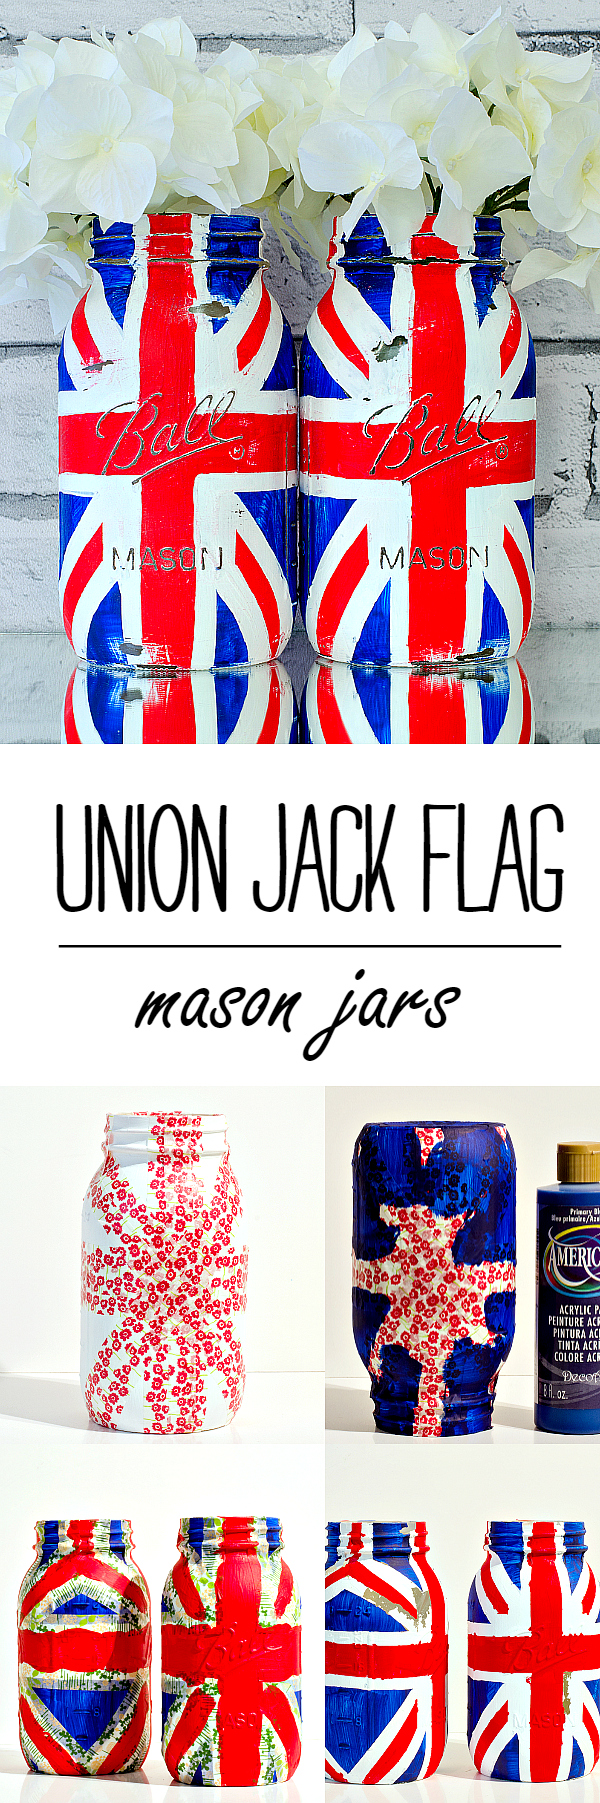 Union Jack Flag Craft Ideas - Mason Jar Union Jack Flag